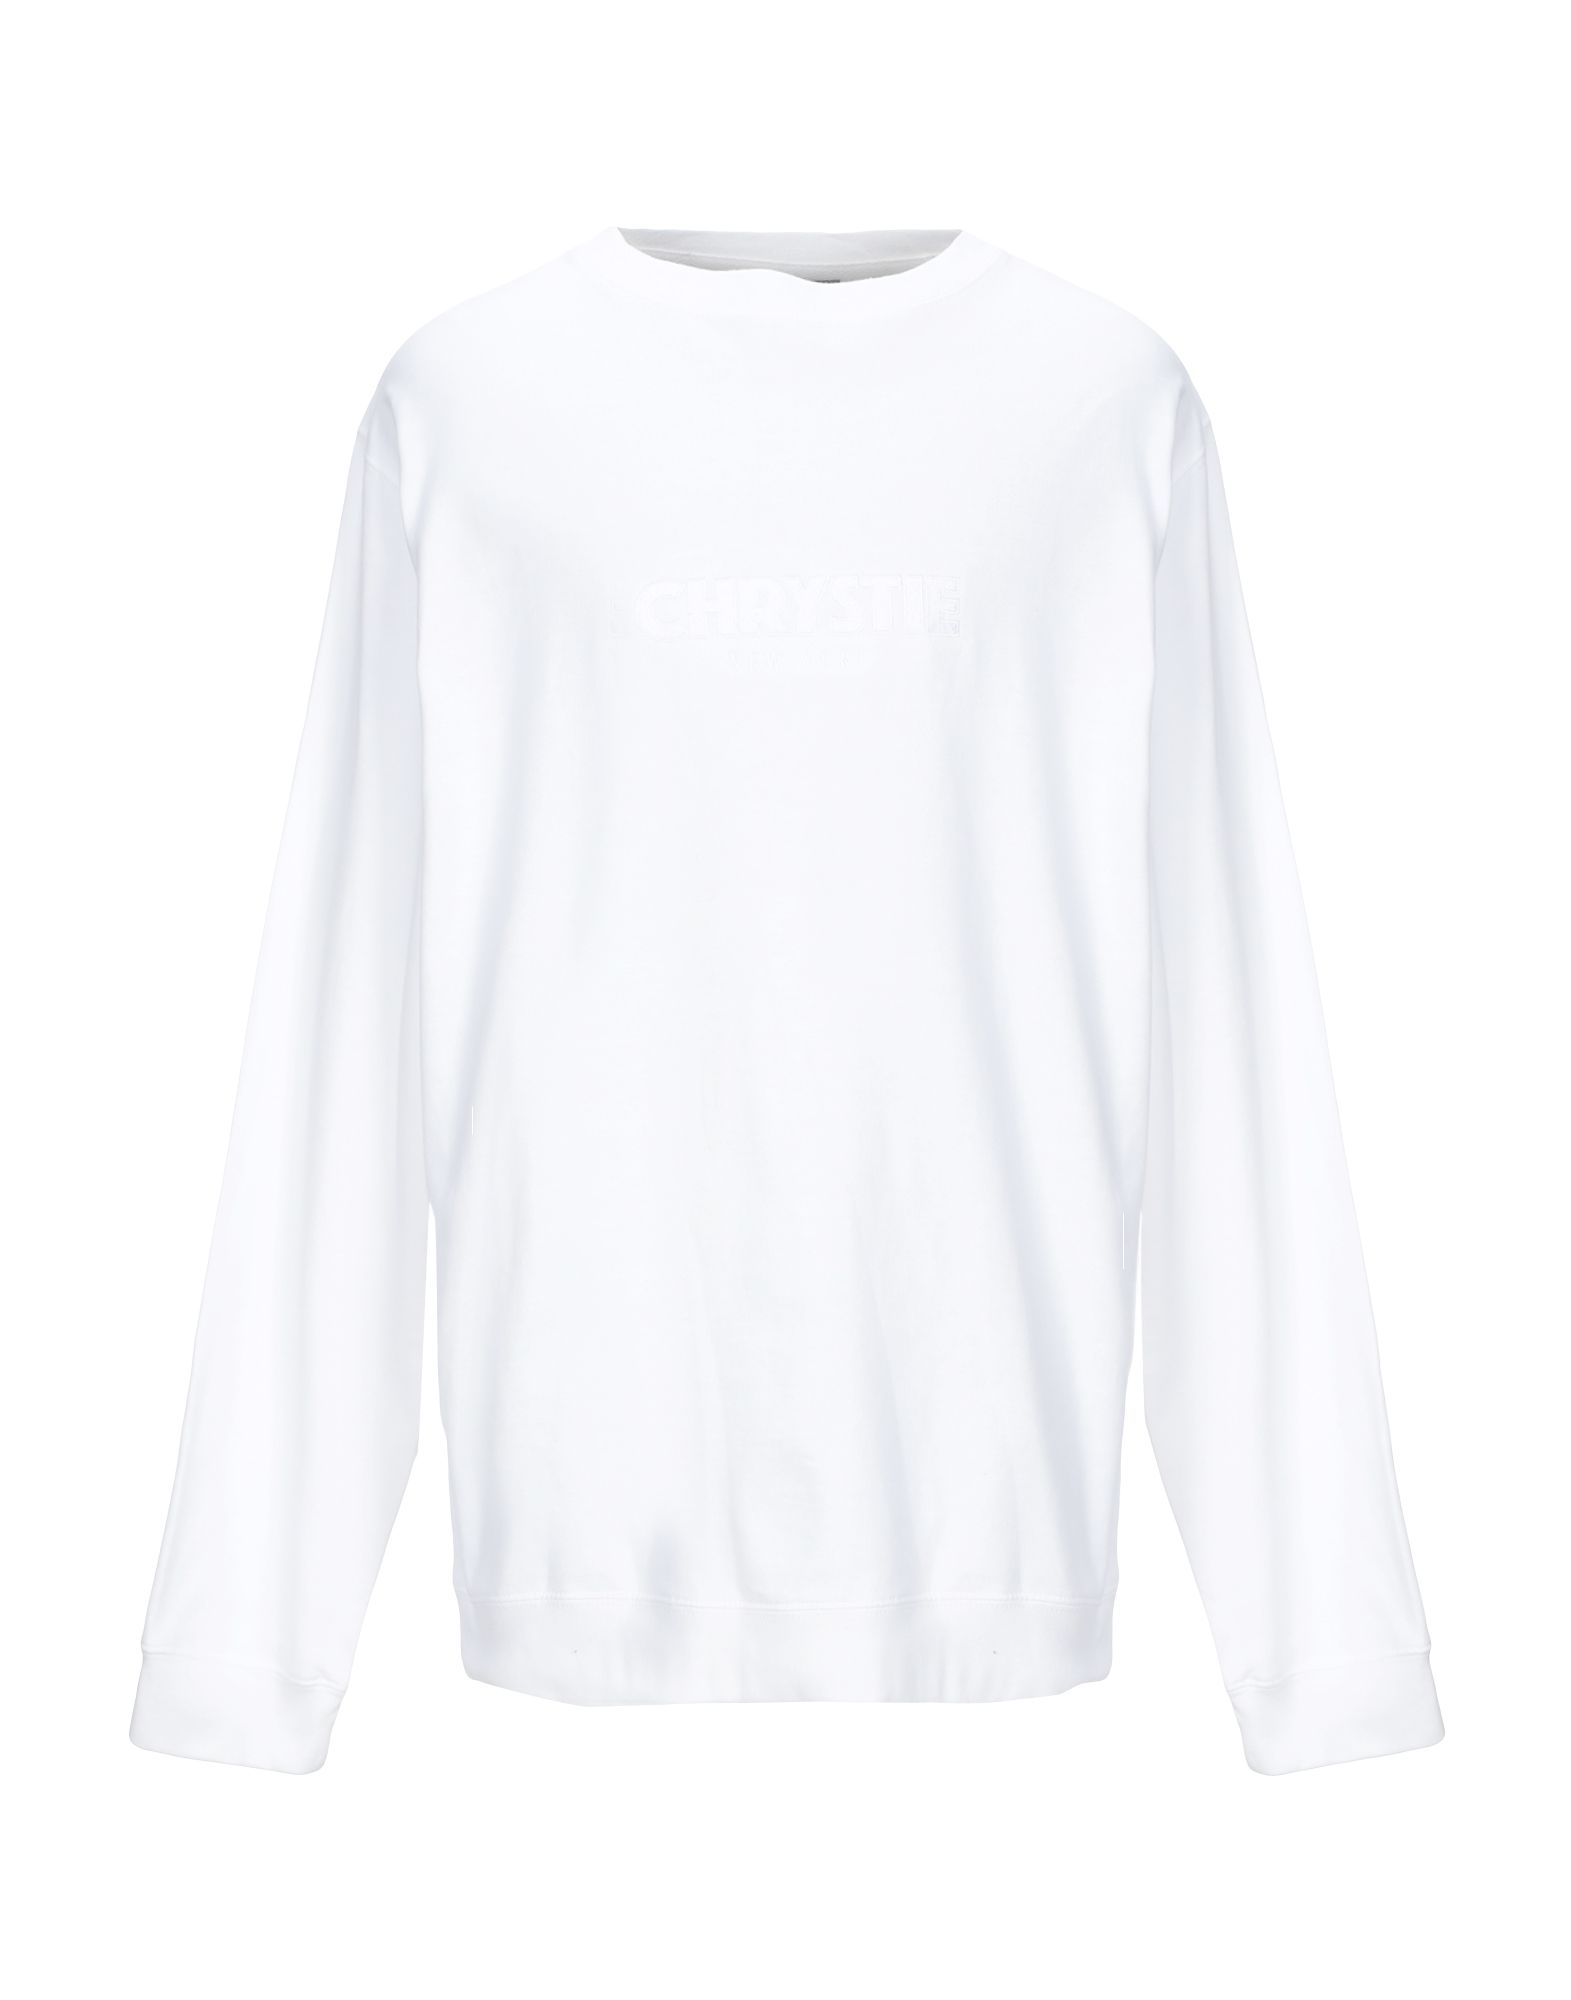 《期間限定セール開催中!》CHRYSTIE New York メンズ スウェットシャツ ホワイト XL コットン 100%